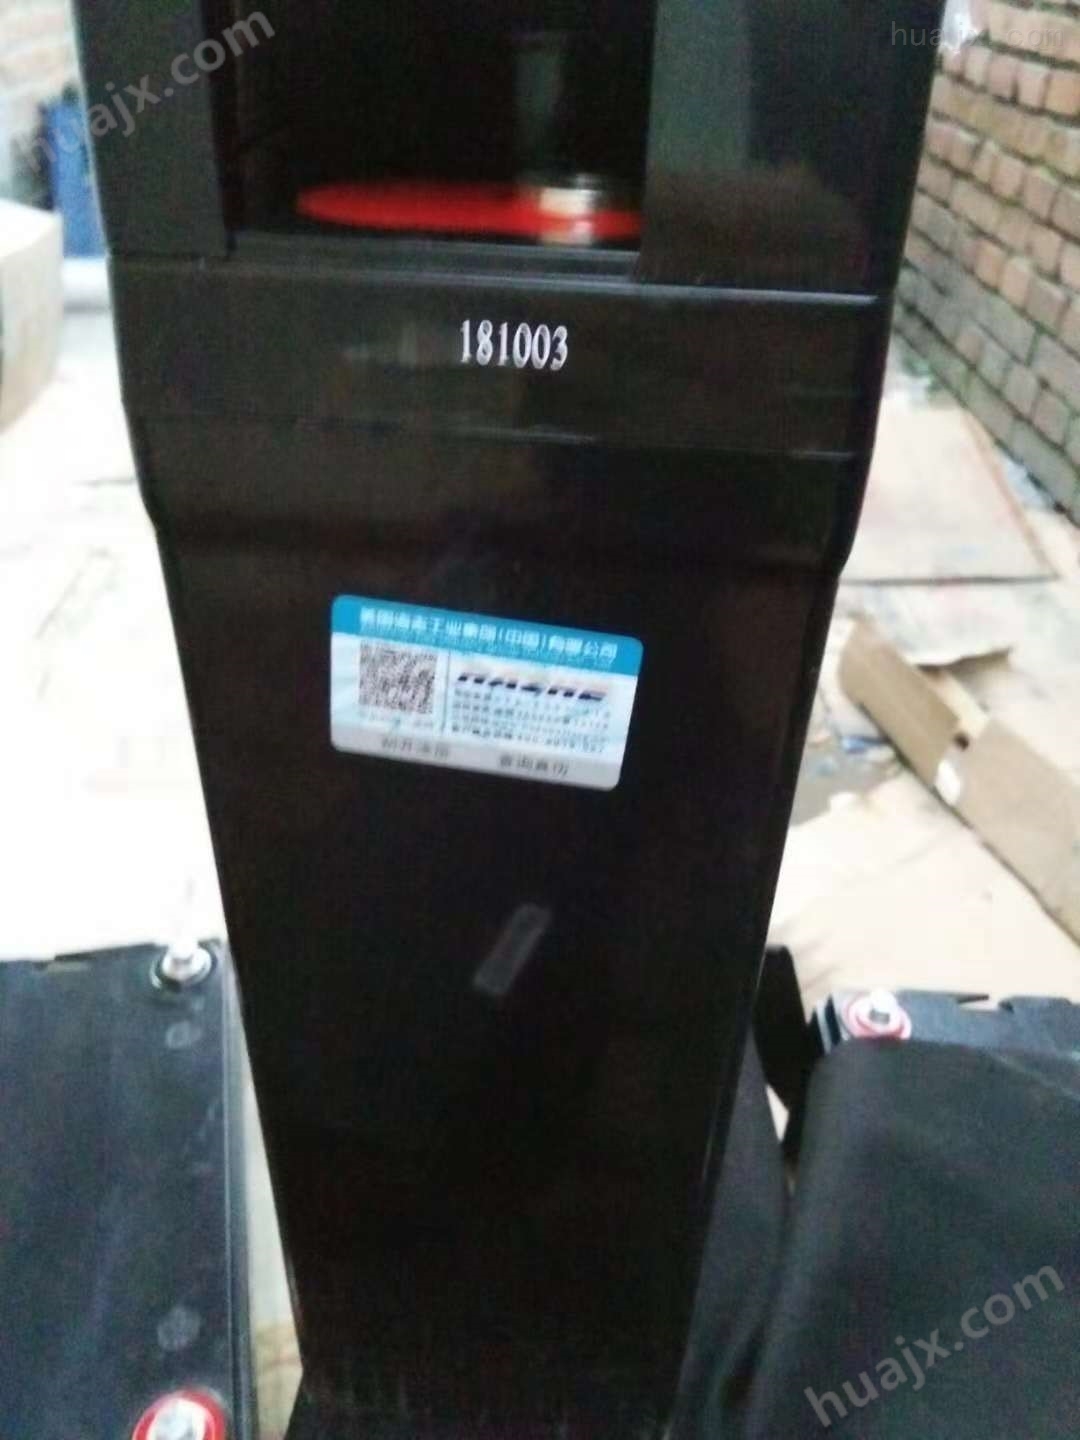 海志蓄电池HZY2-1500|海志2V1500Ah直销中心